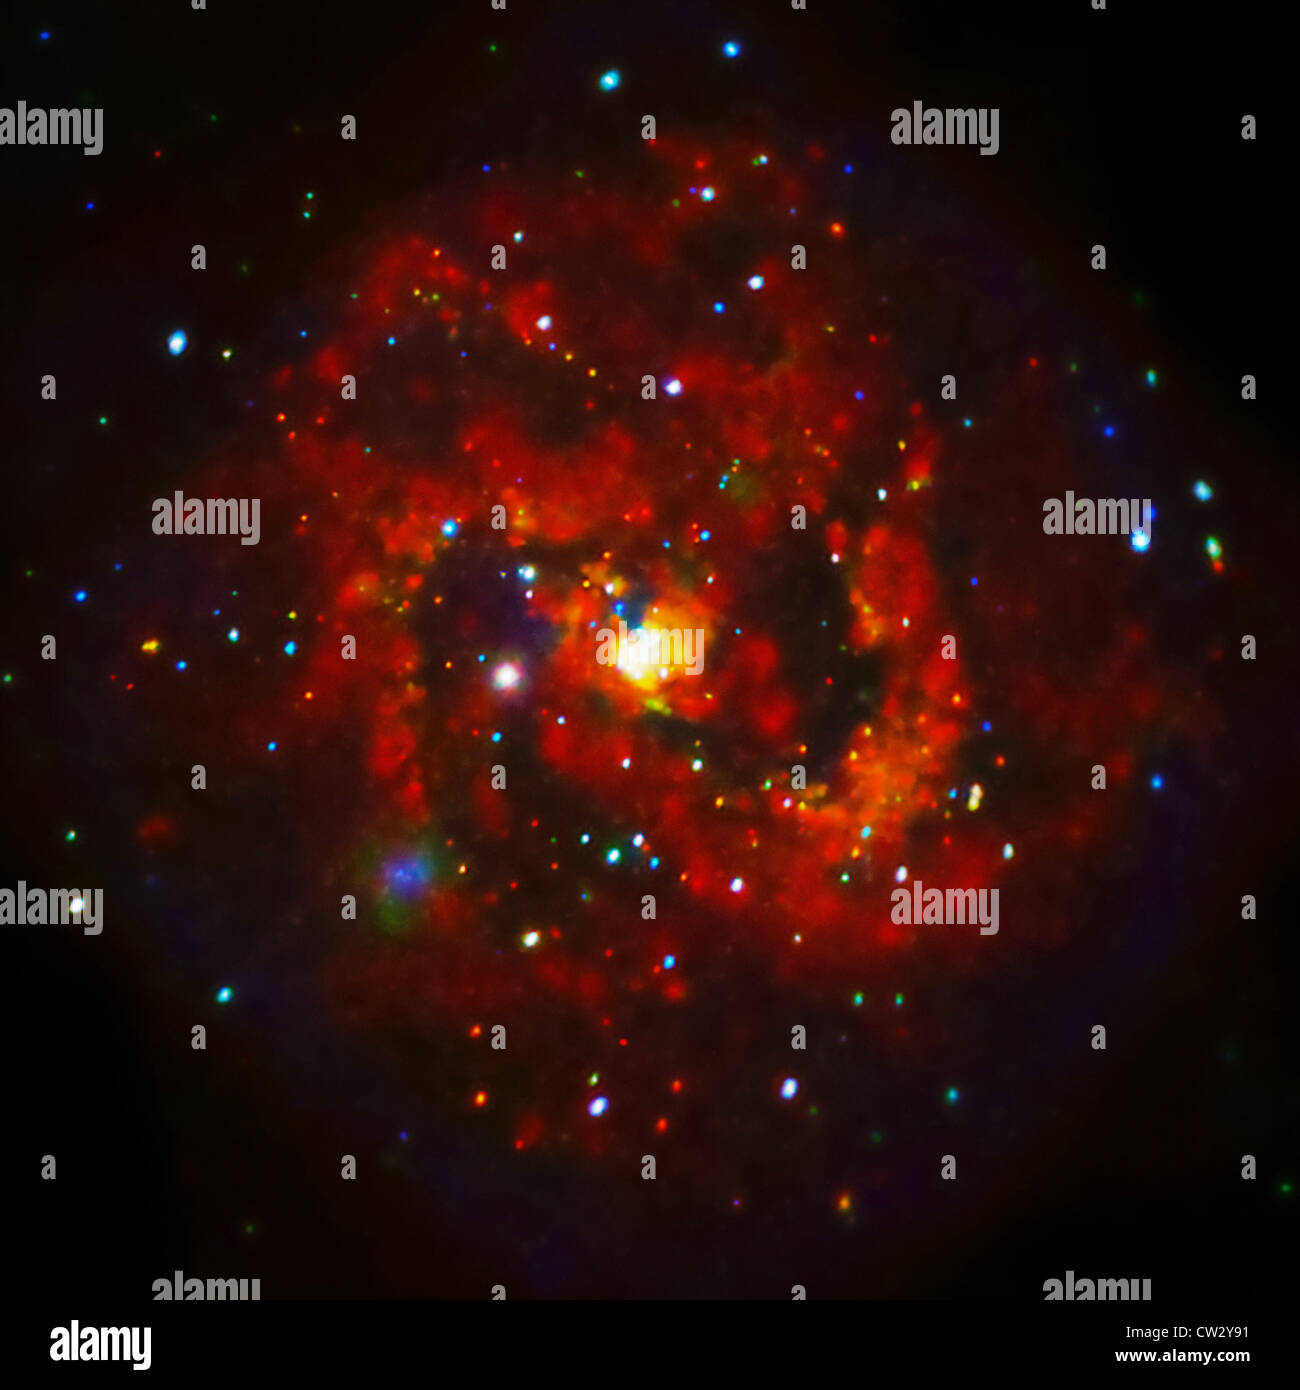 Les rayons x d'une jeune Supernova Remnant dans M83, une galaxie spirale située à environ 15 millions d'années-lumière de la Terre. Banque D'Images